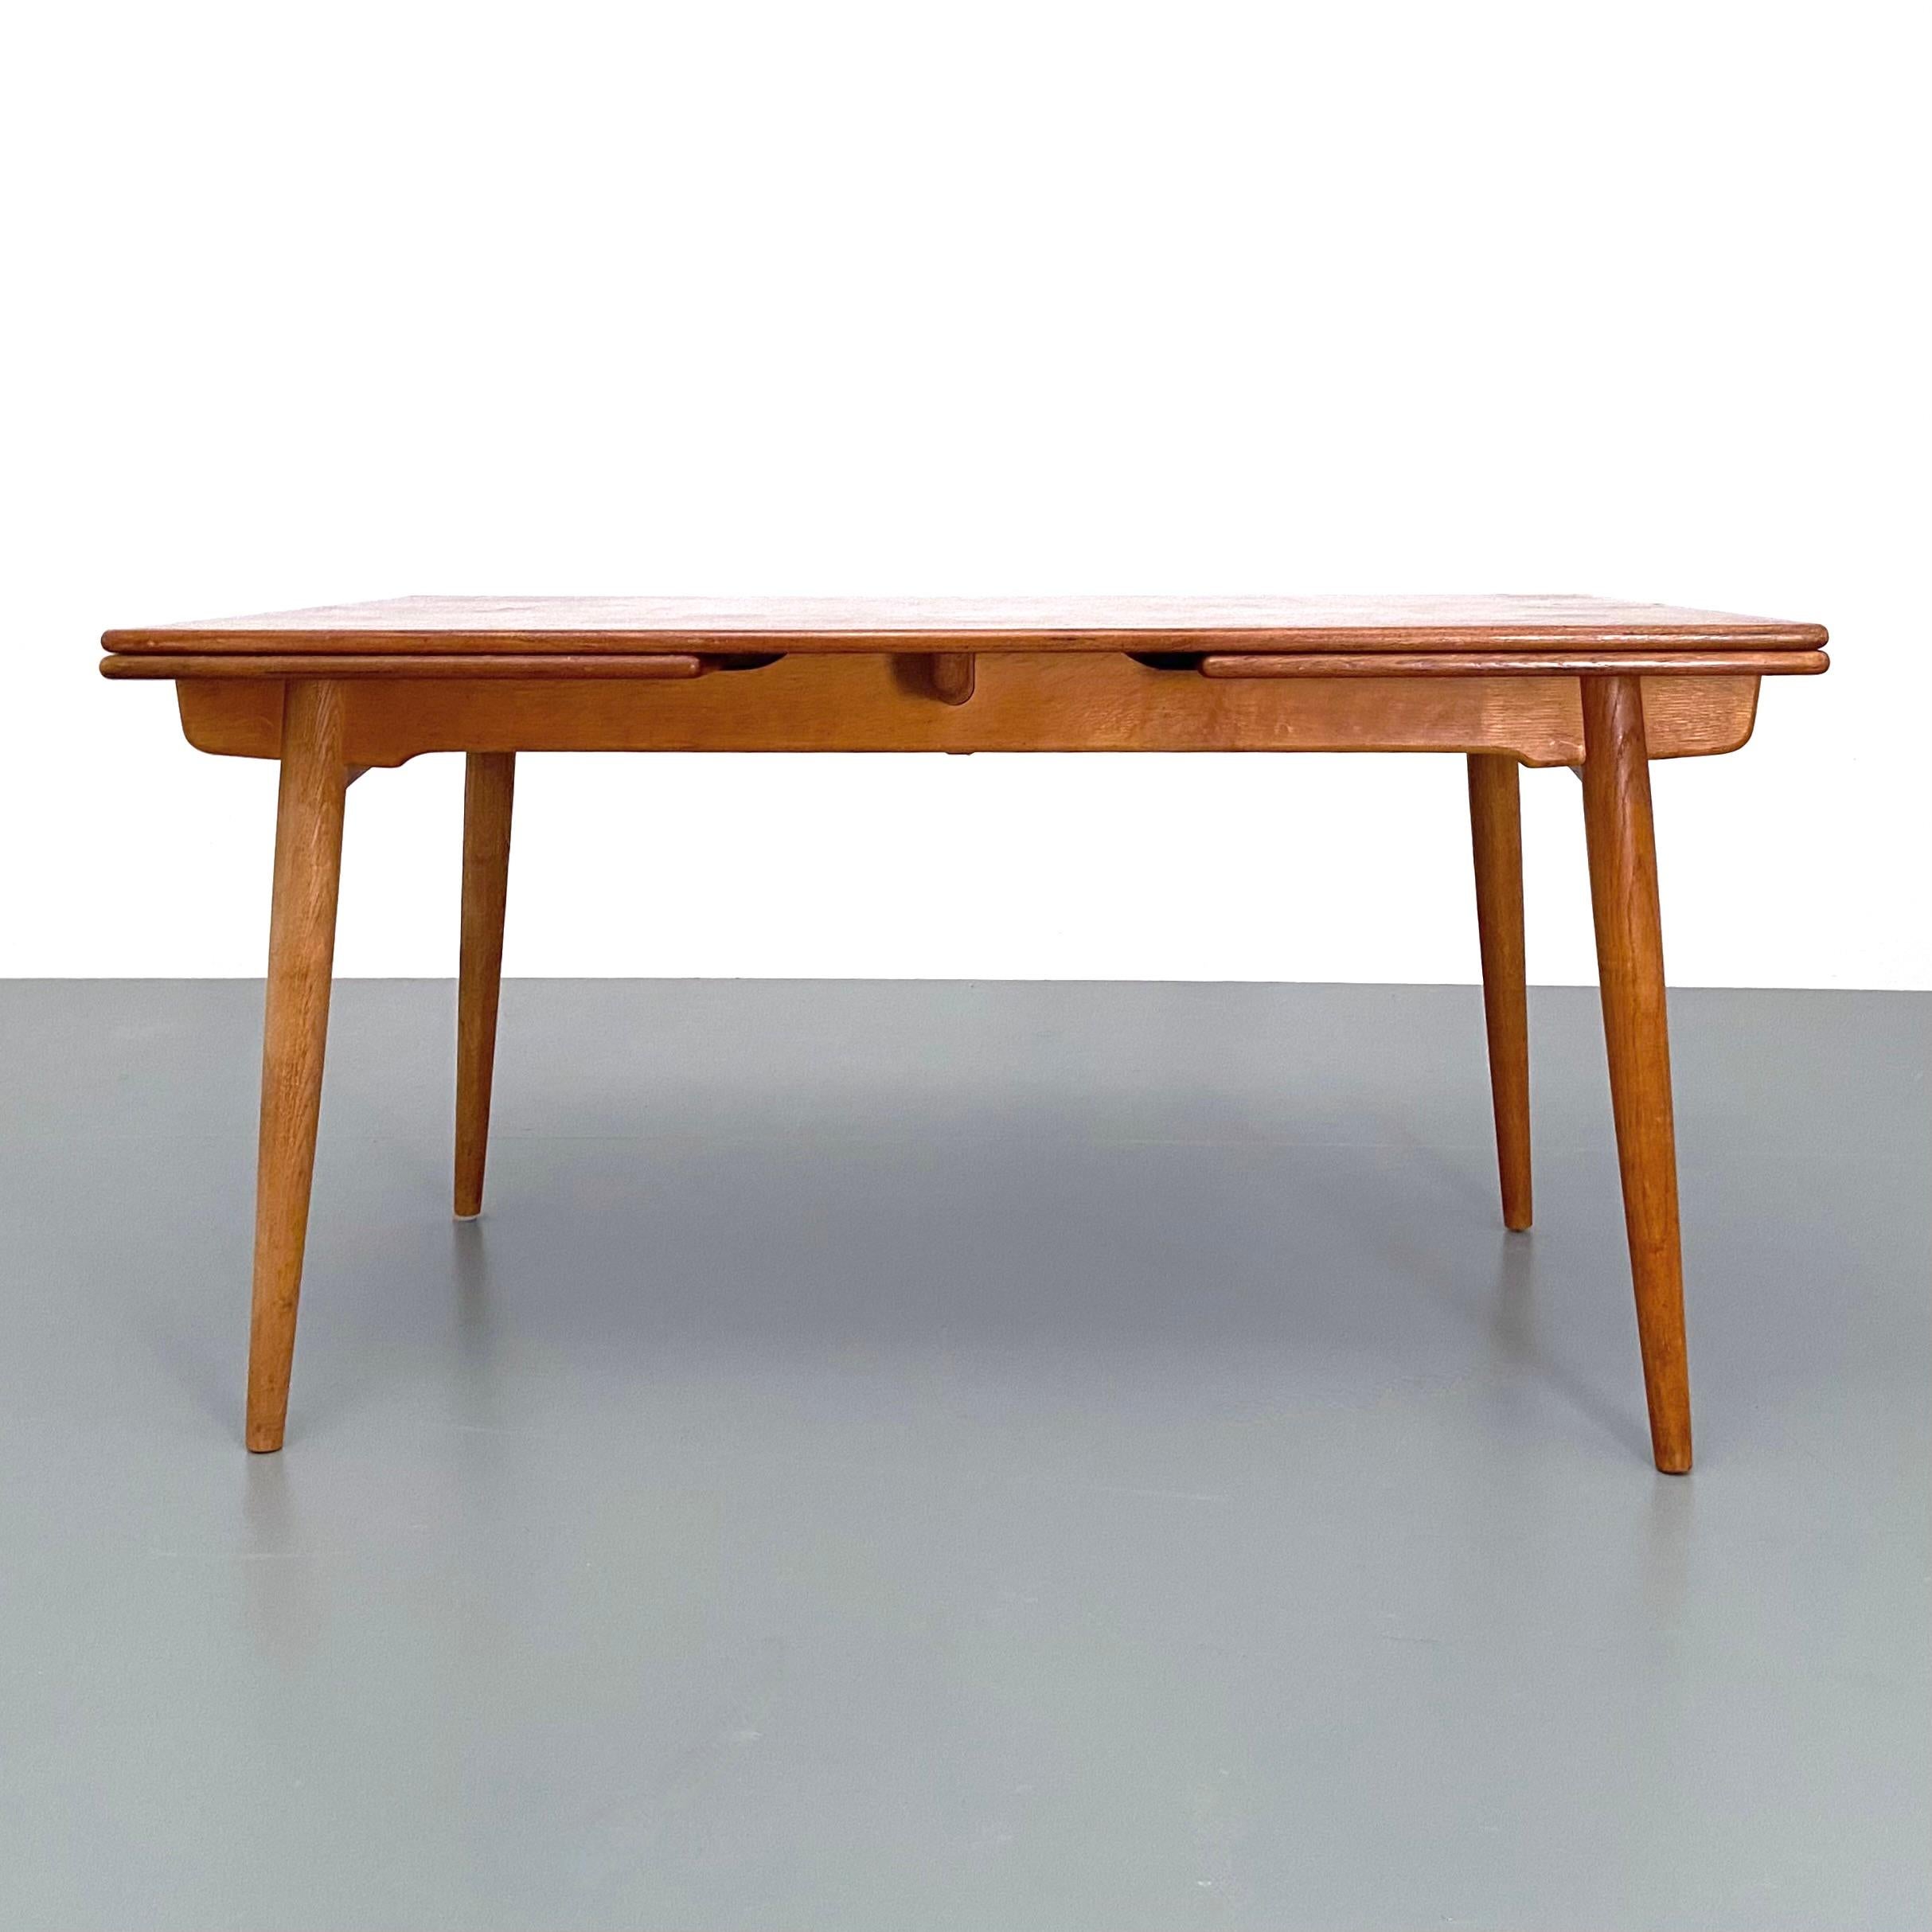 Table de salle à manger modèle AT-312 conçue par Hans Wegner pour Andreas Tuck, Danemark, années 1960.
Réalisée en chêne, la table est dotée de deux abattants qui se cachent sous le plateau et s'intègrent parfaitement à celui-ci lorsque la table